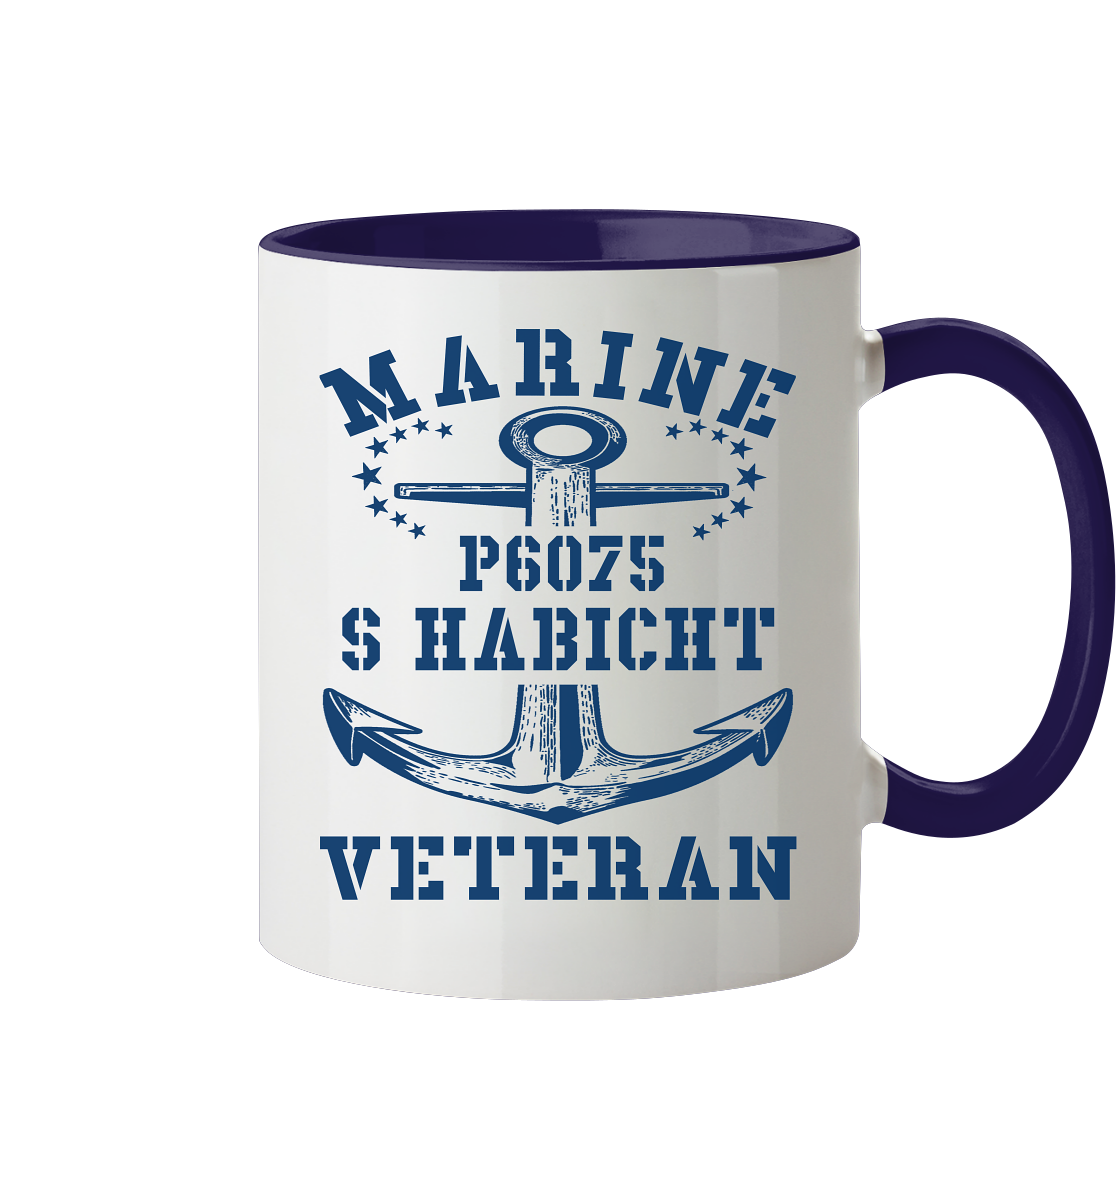 P6075 S HABICHT Marine Veteran - Tasse zweifarbig